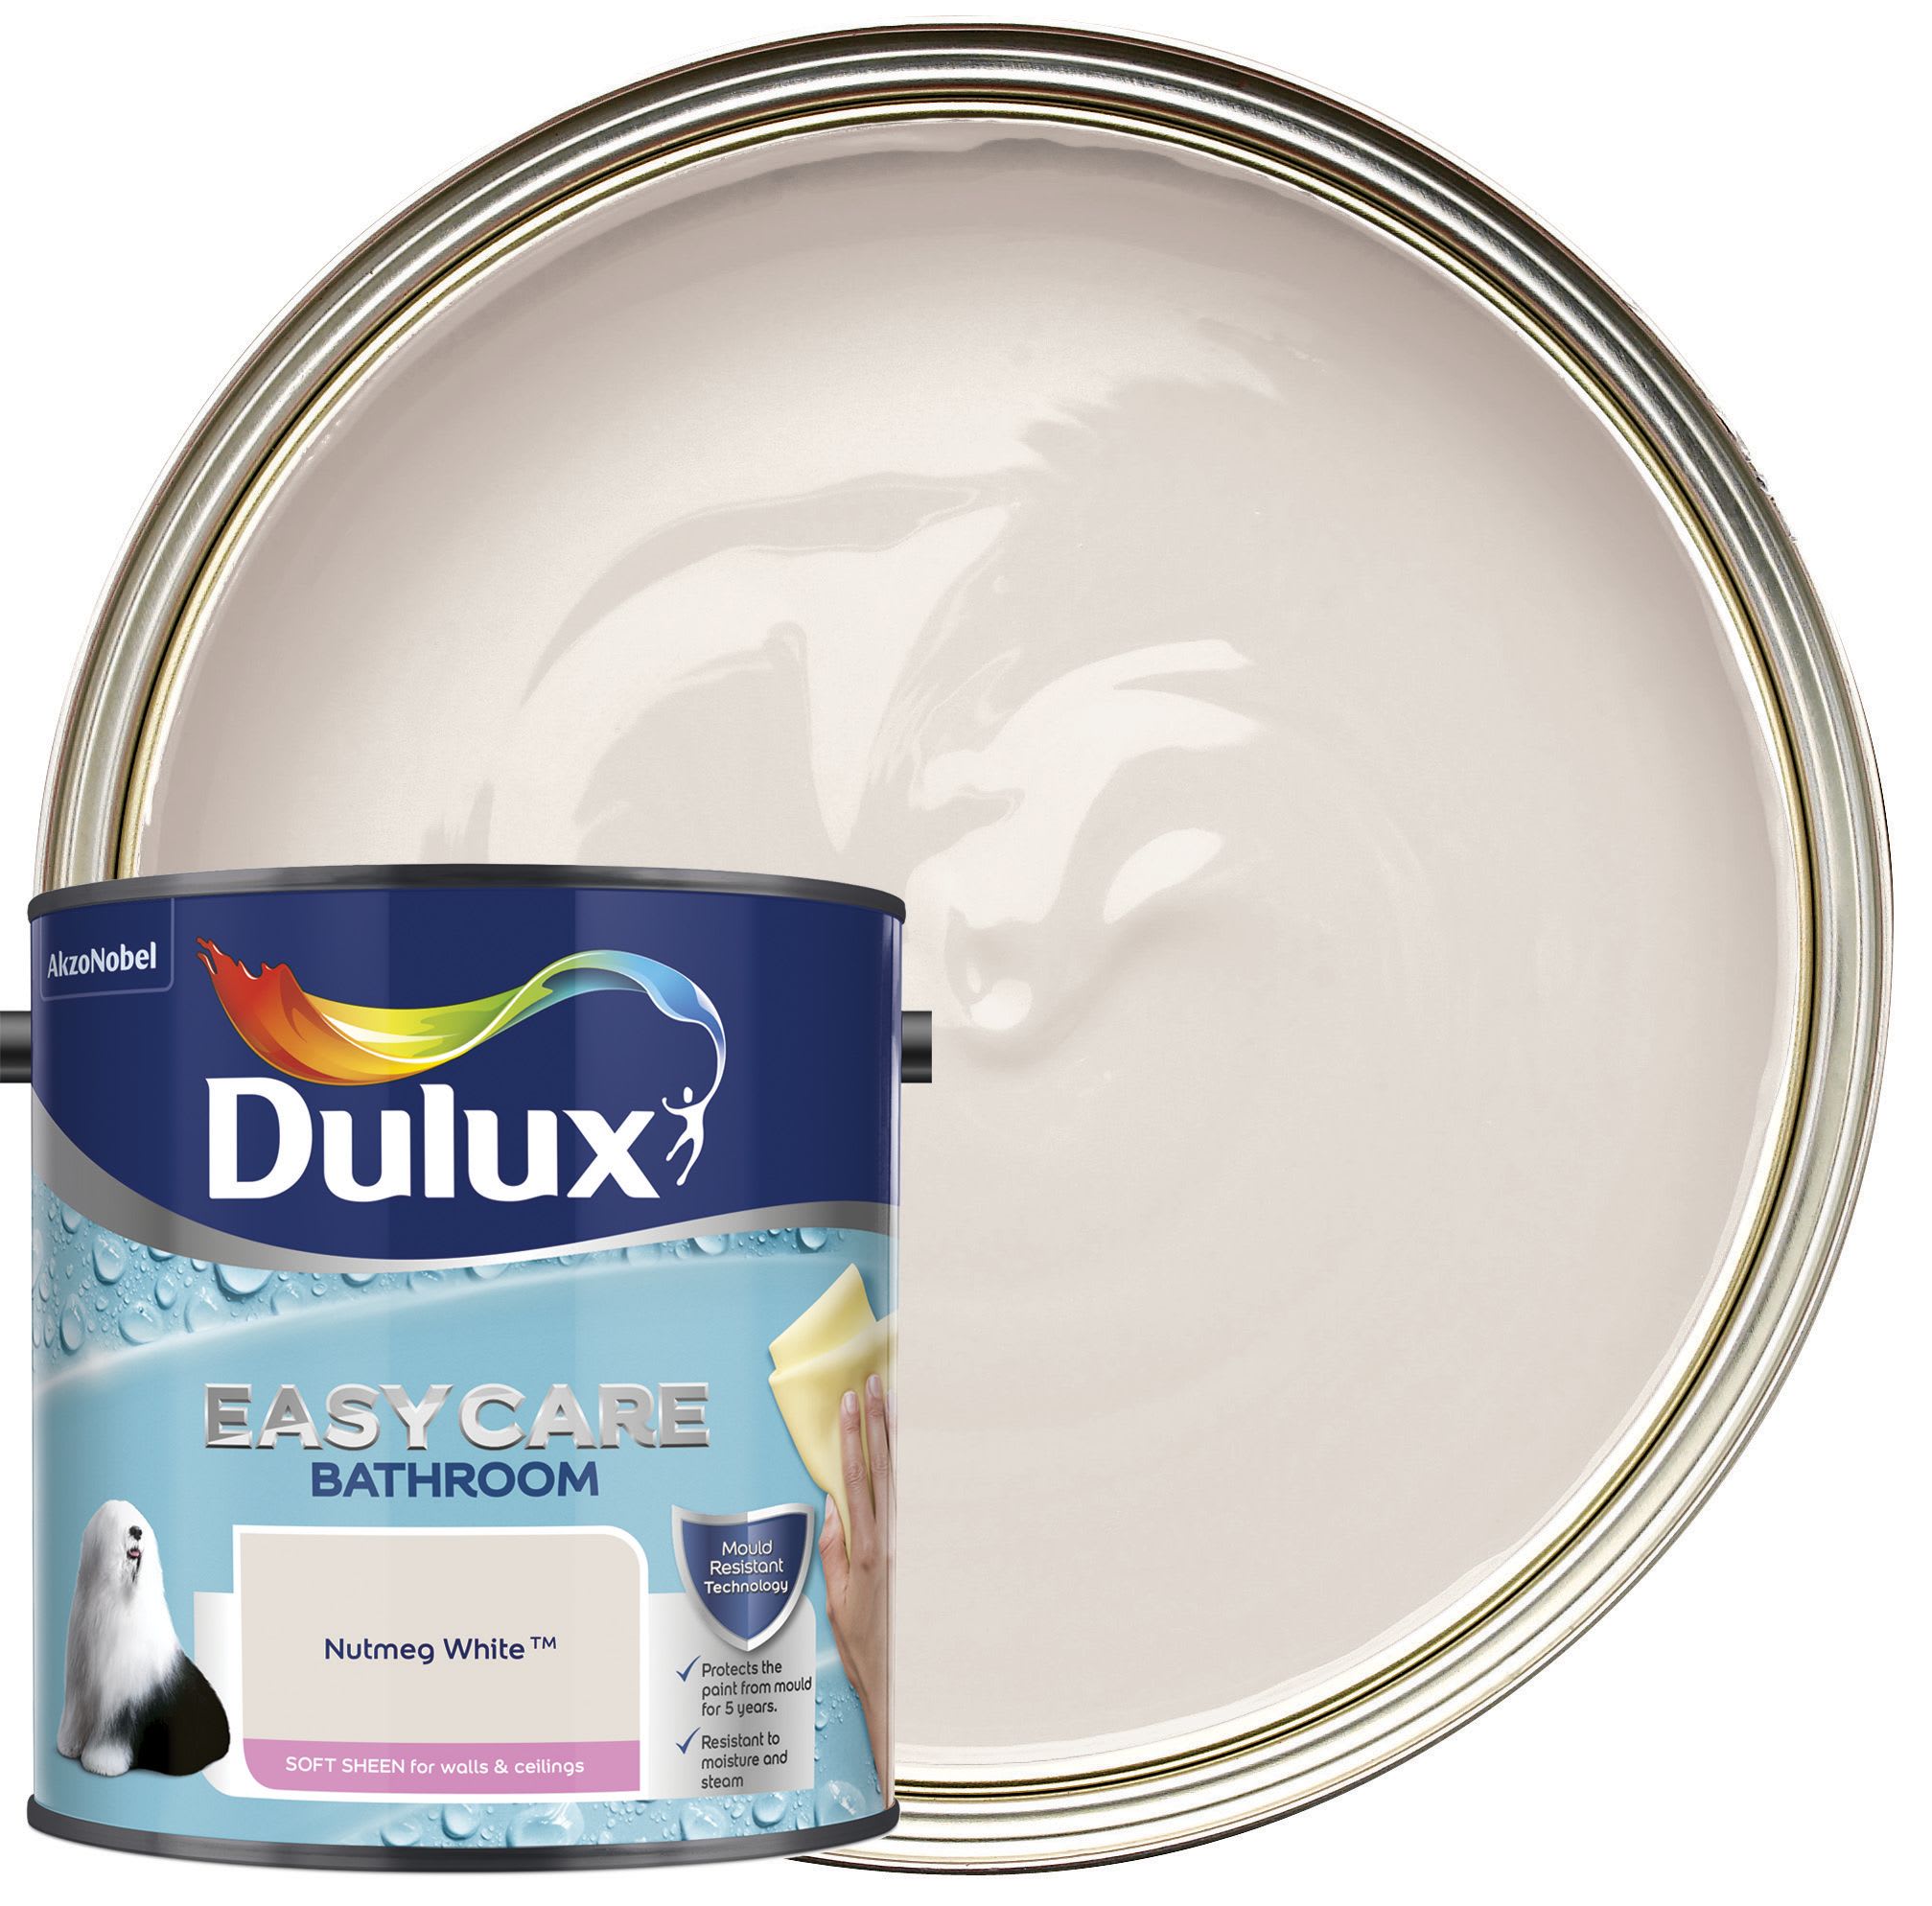 Dulux Easycare Bathroom Soft Sheen Emulsion Paint Nutmeg